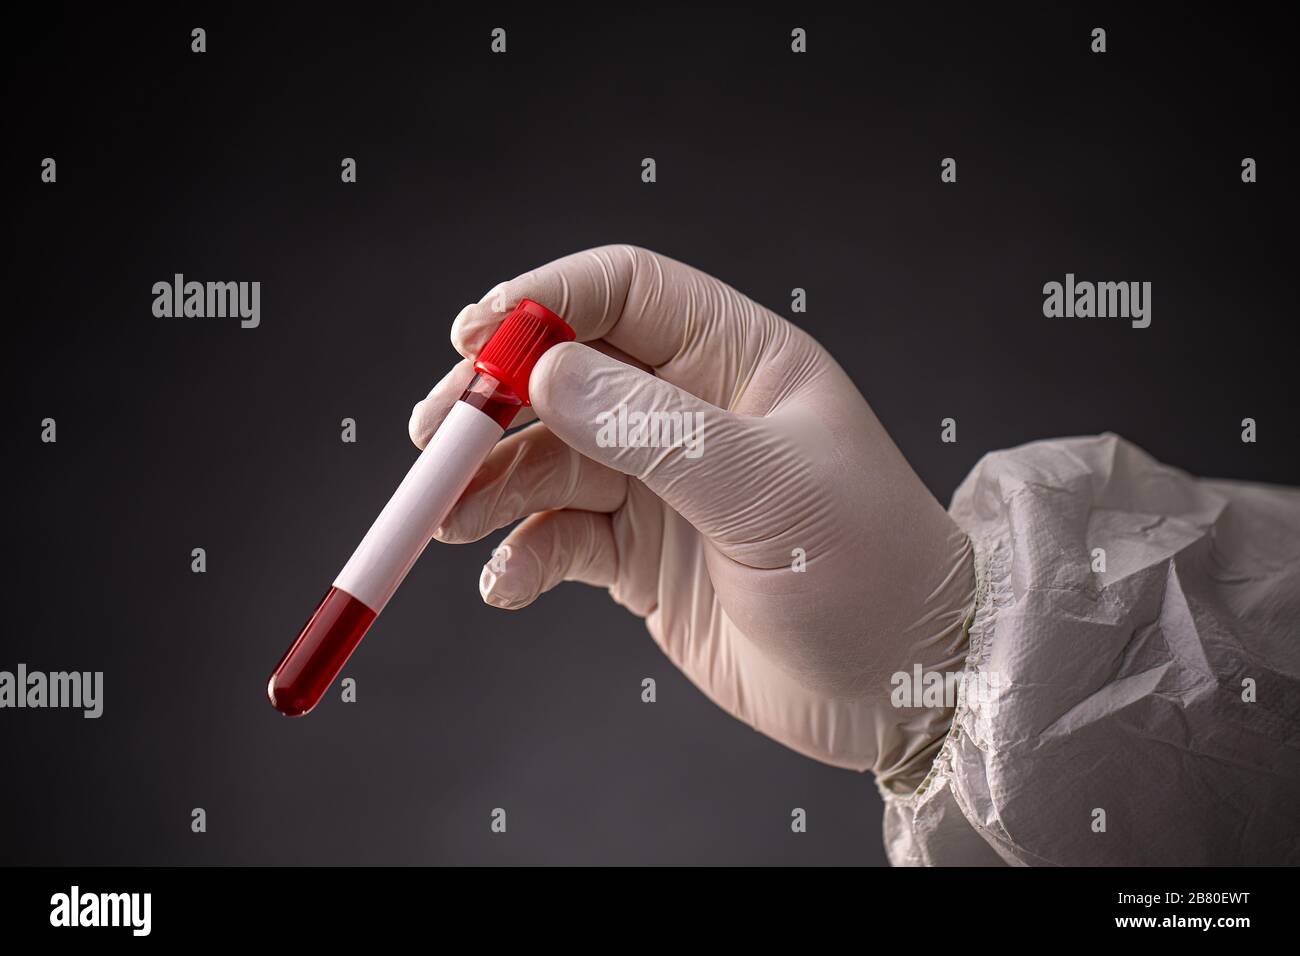 Die Hand des Wissenschaftlers in weißer Schutzkleidung und medizinischen Handschuhen, die das Bluttestrohr halten Stockfoto